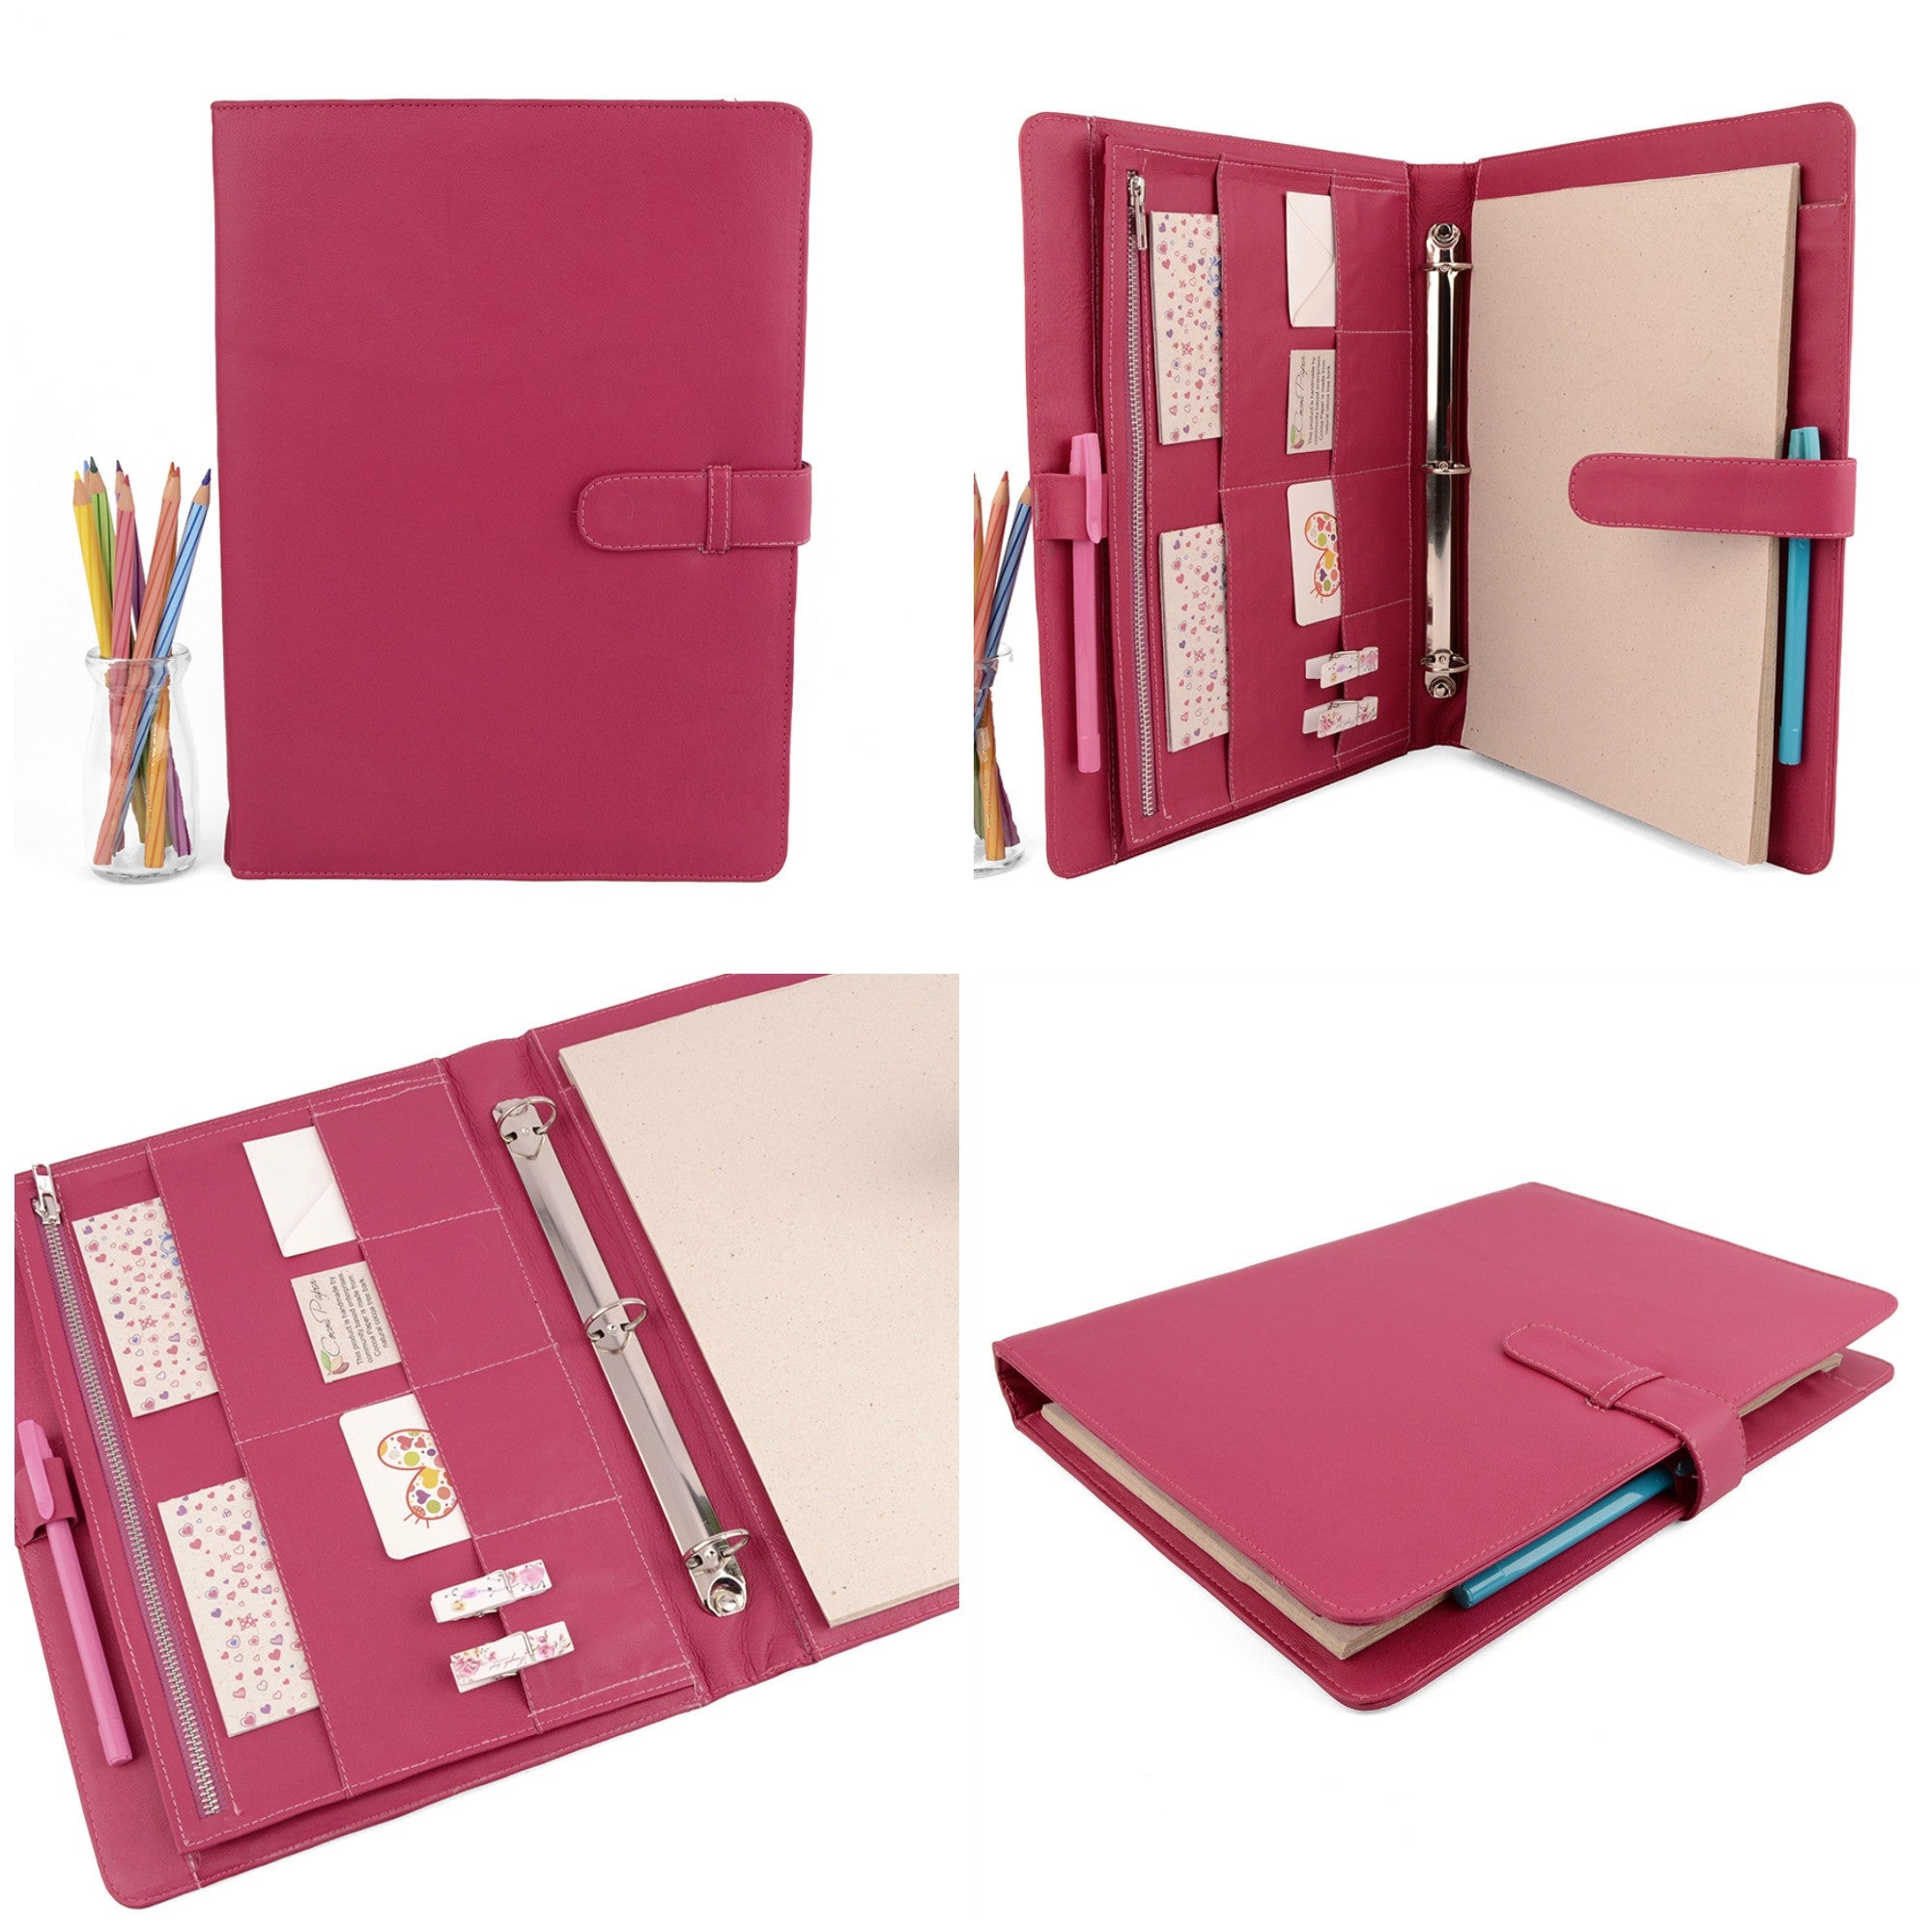 Personalised Folder, A4 Ring Binder, Medical Notes Folder, Custom Made  Files & Folders, Medical Document Holder, Paper Storage, Pink Folder 